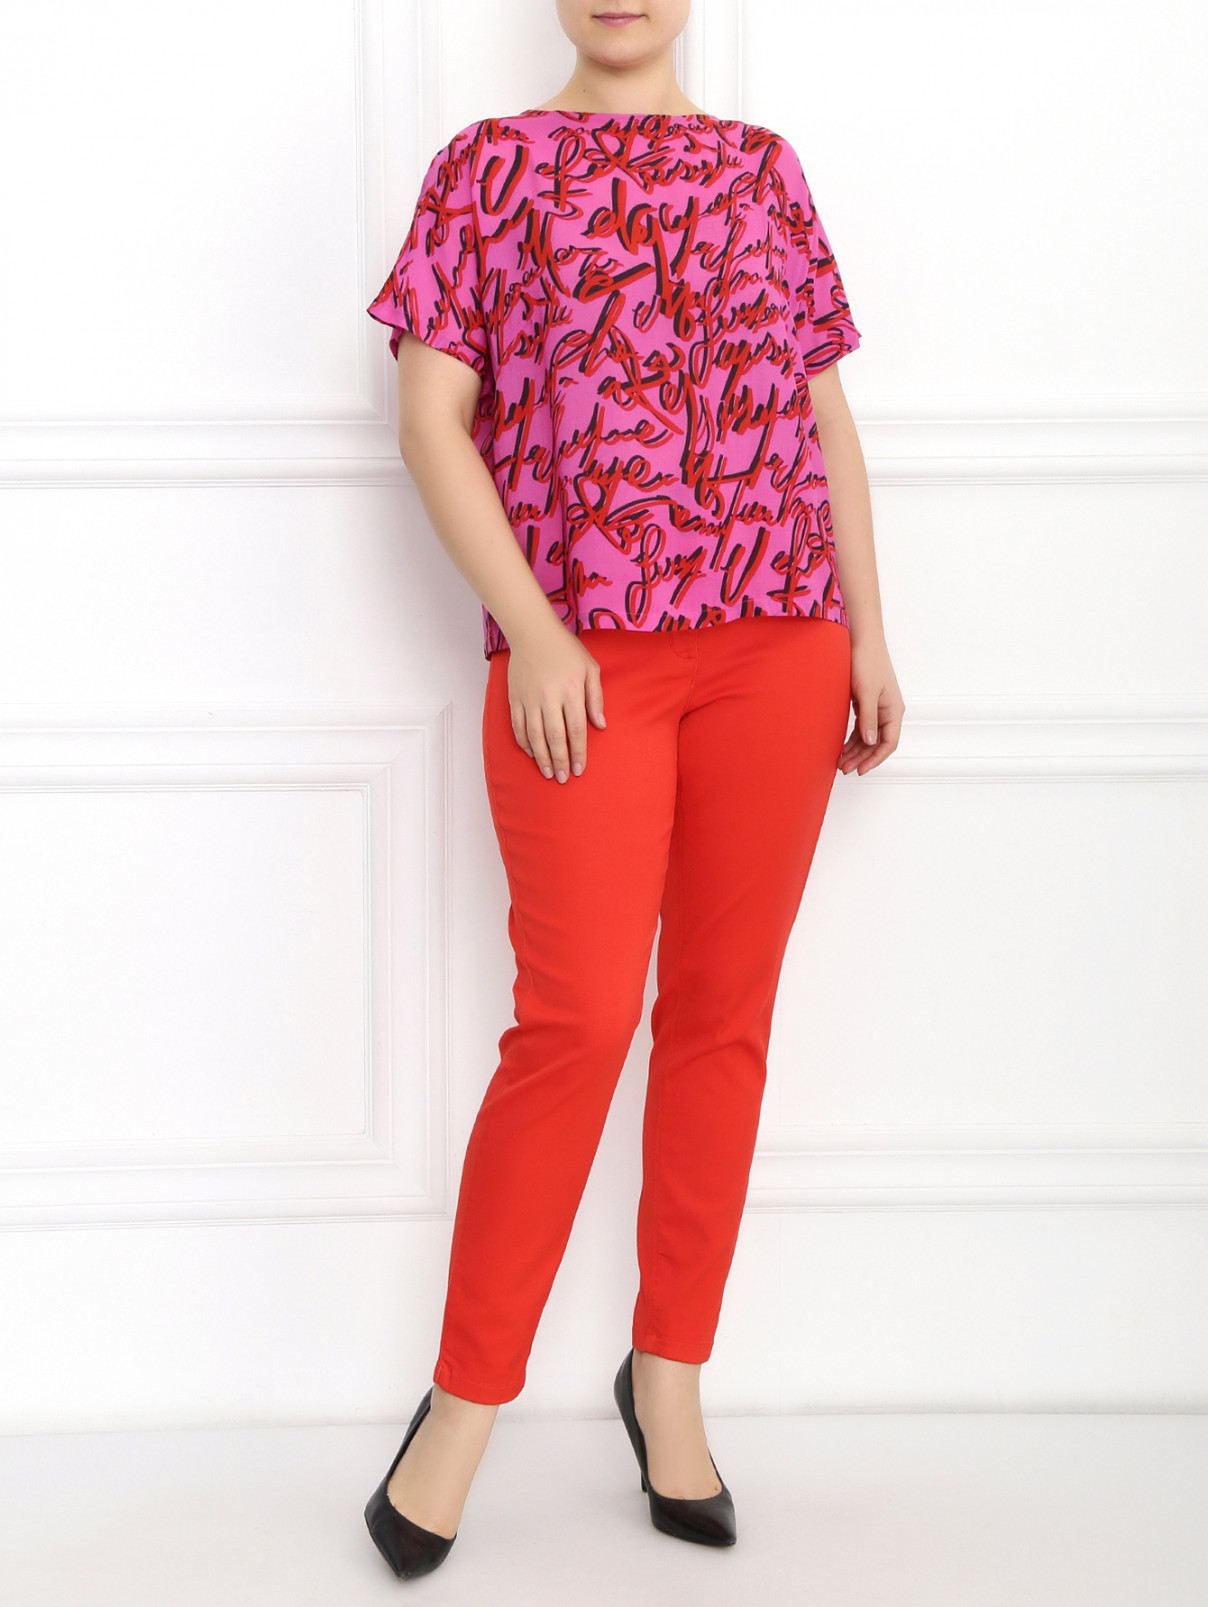 Однотонные узкие брюки Marina Rinaldi  –  Модель Общий вид  – Цвет:  Оранжевый